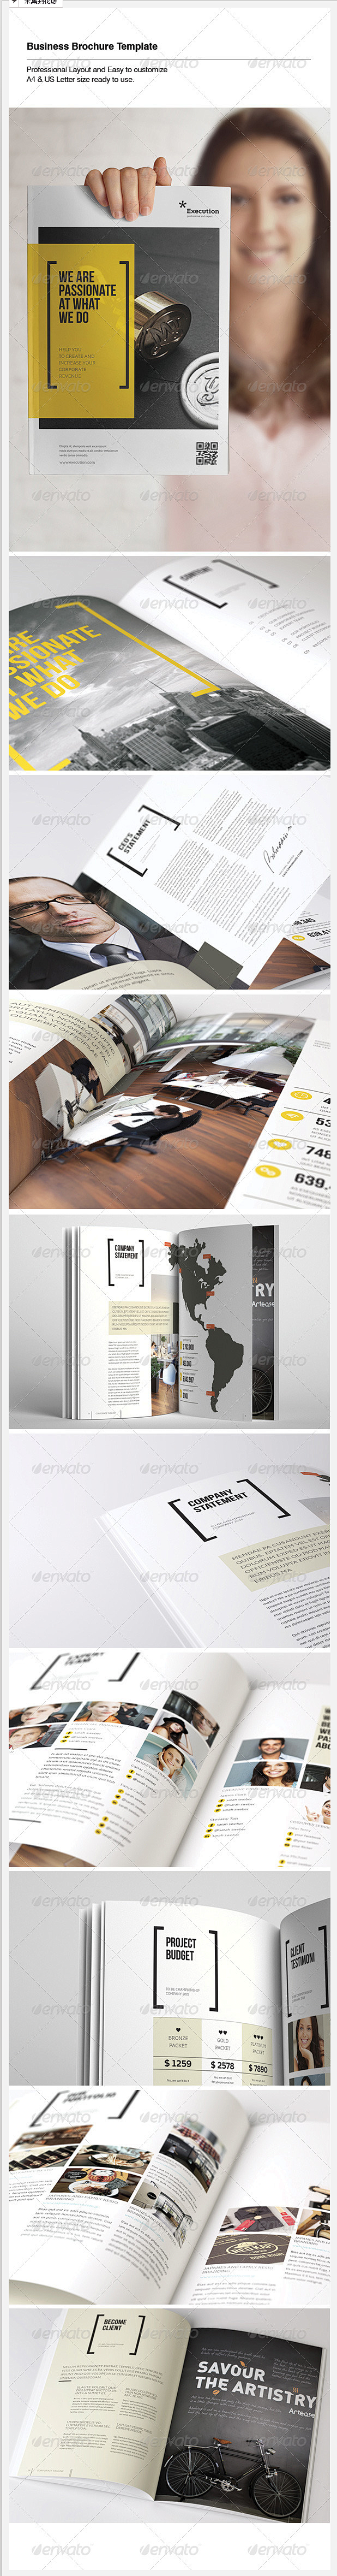 打印模板 - 商务手册| Graphic...